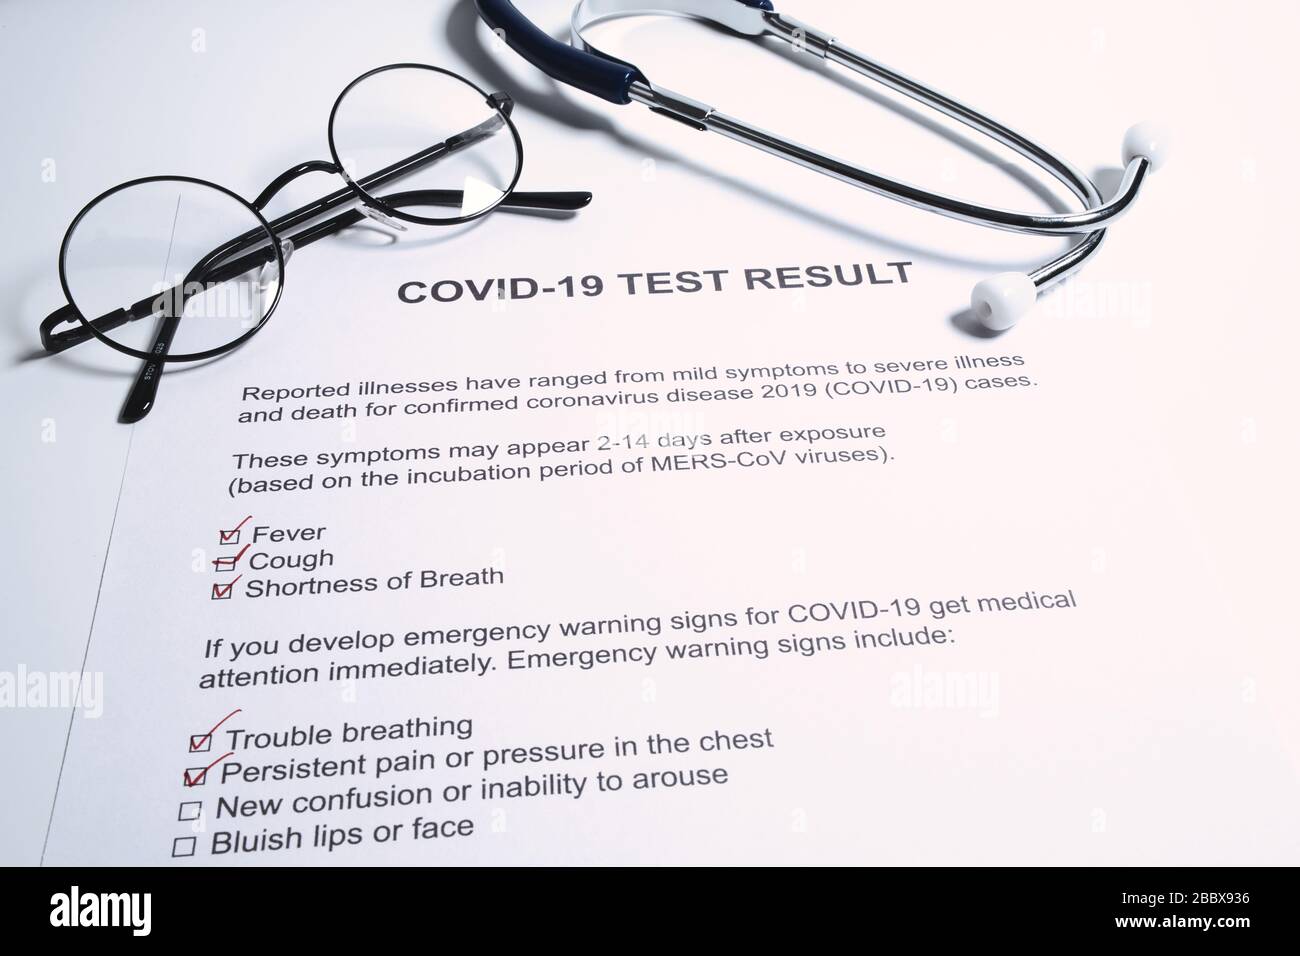 Positive test result for COVID-19 or novel coronavirus pandemic. Stethoscope and novel coronavirus test result on doctor's table Stock Photo